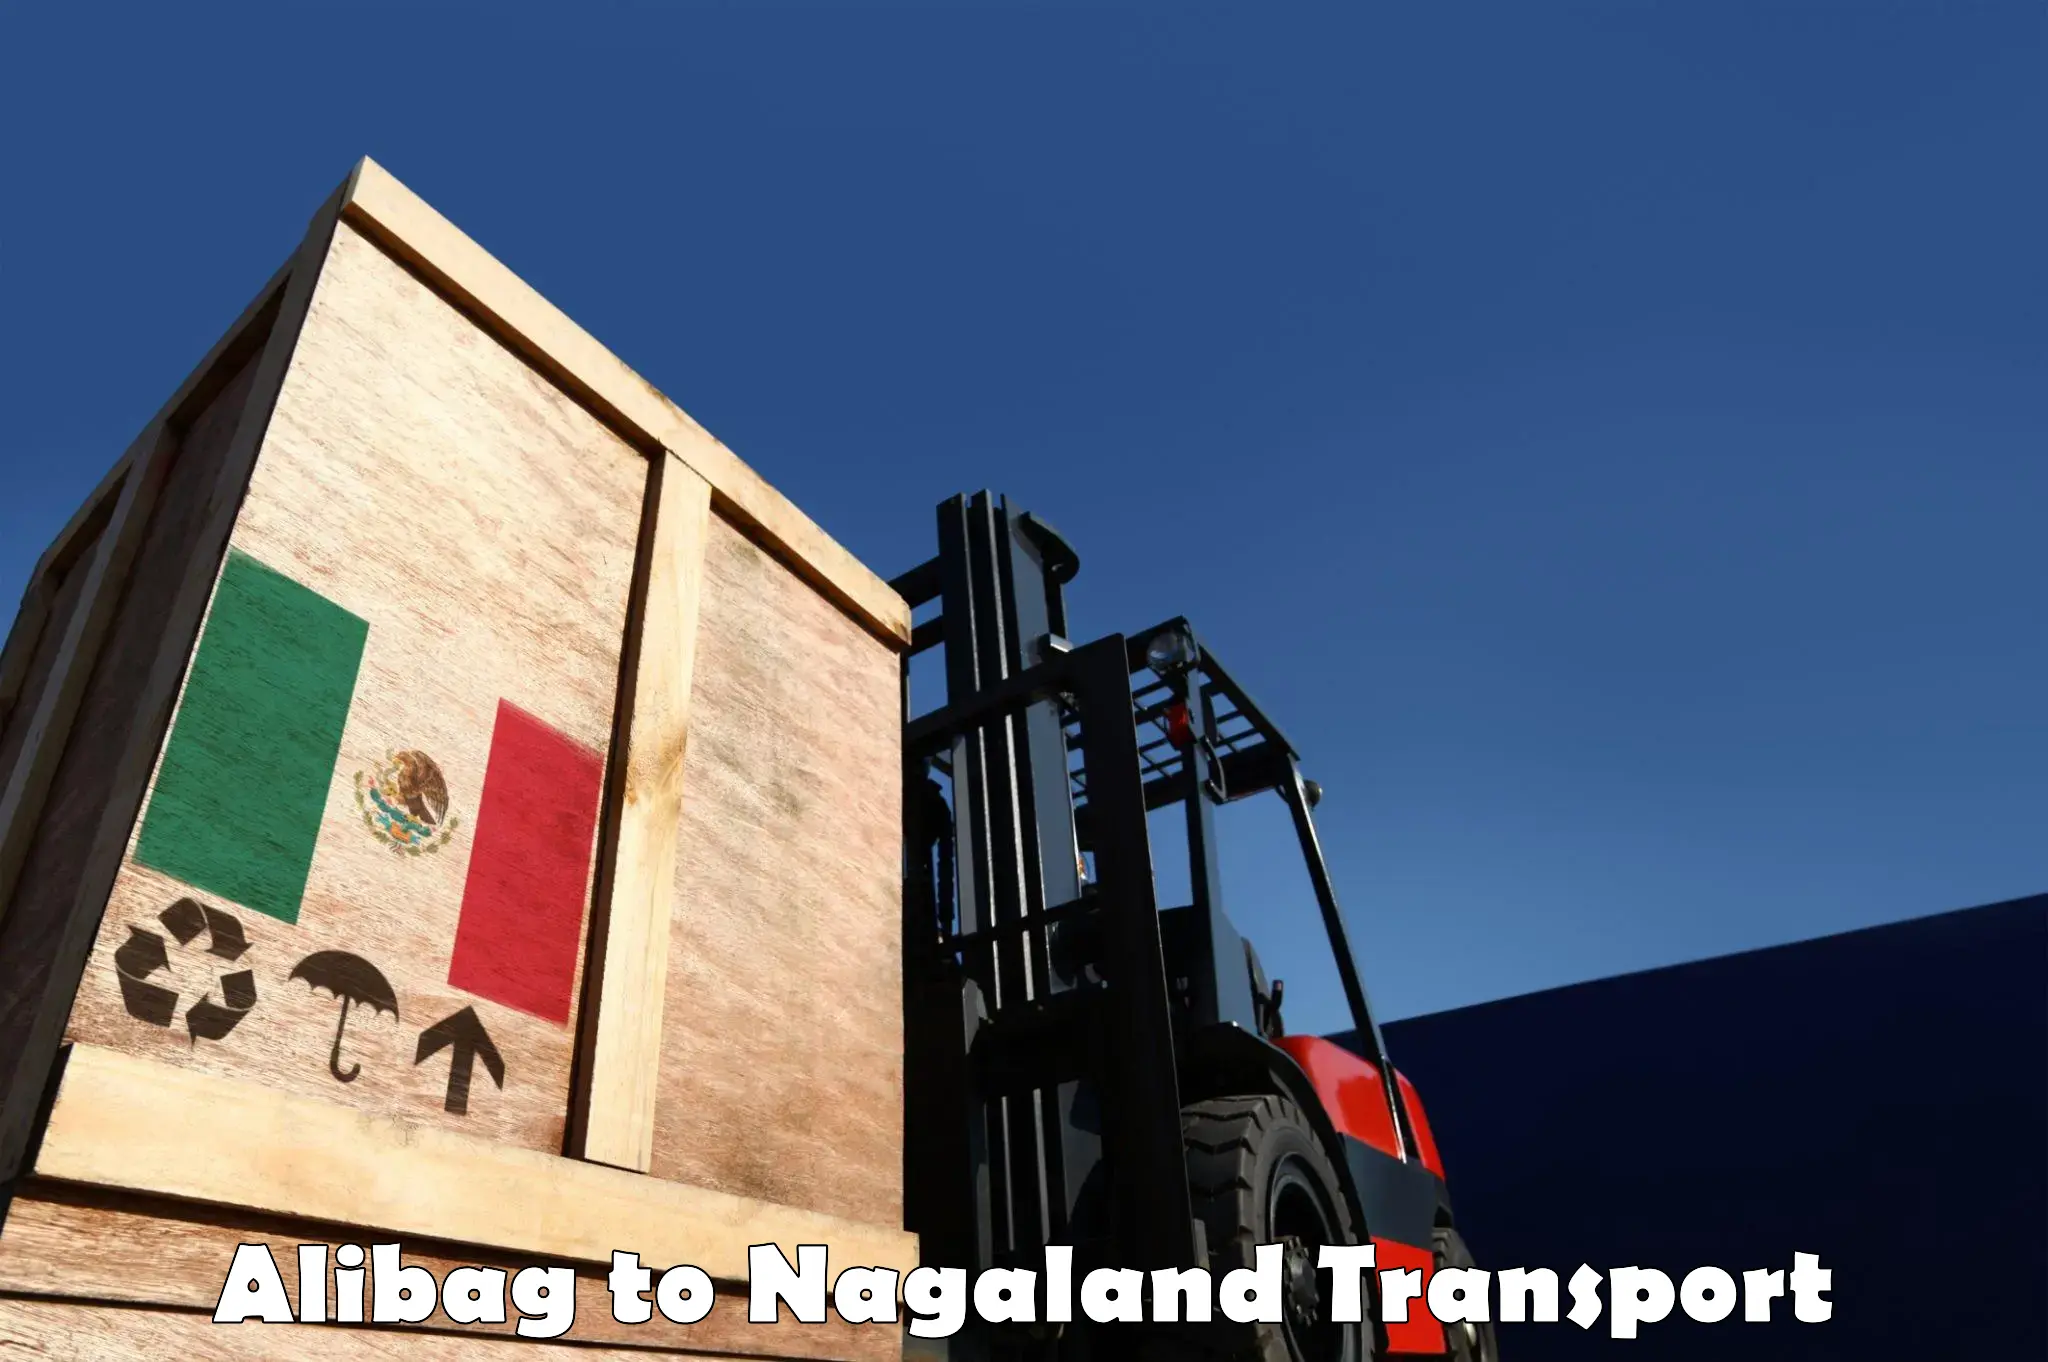 Online transport service Alibag to Nagaland